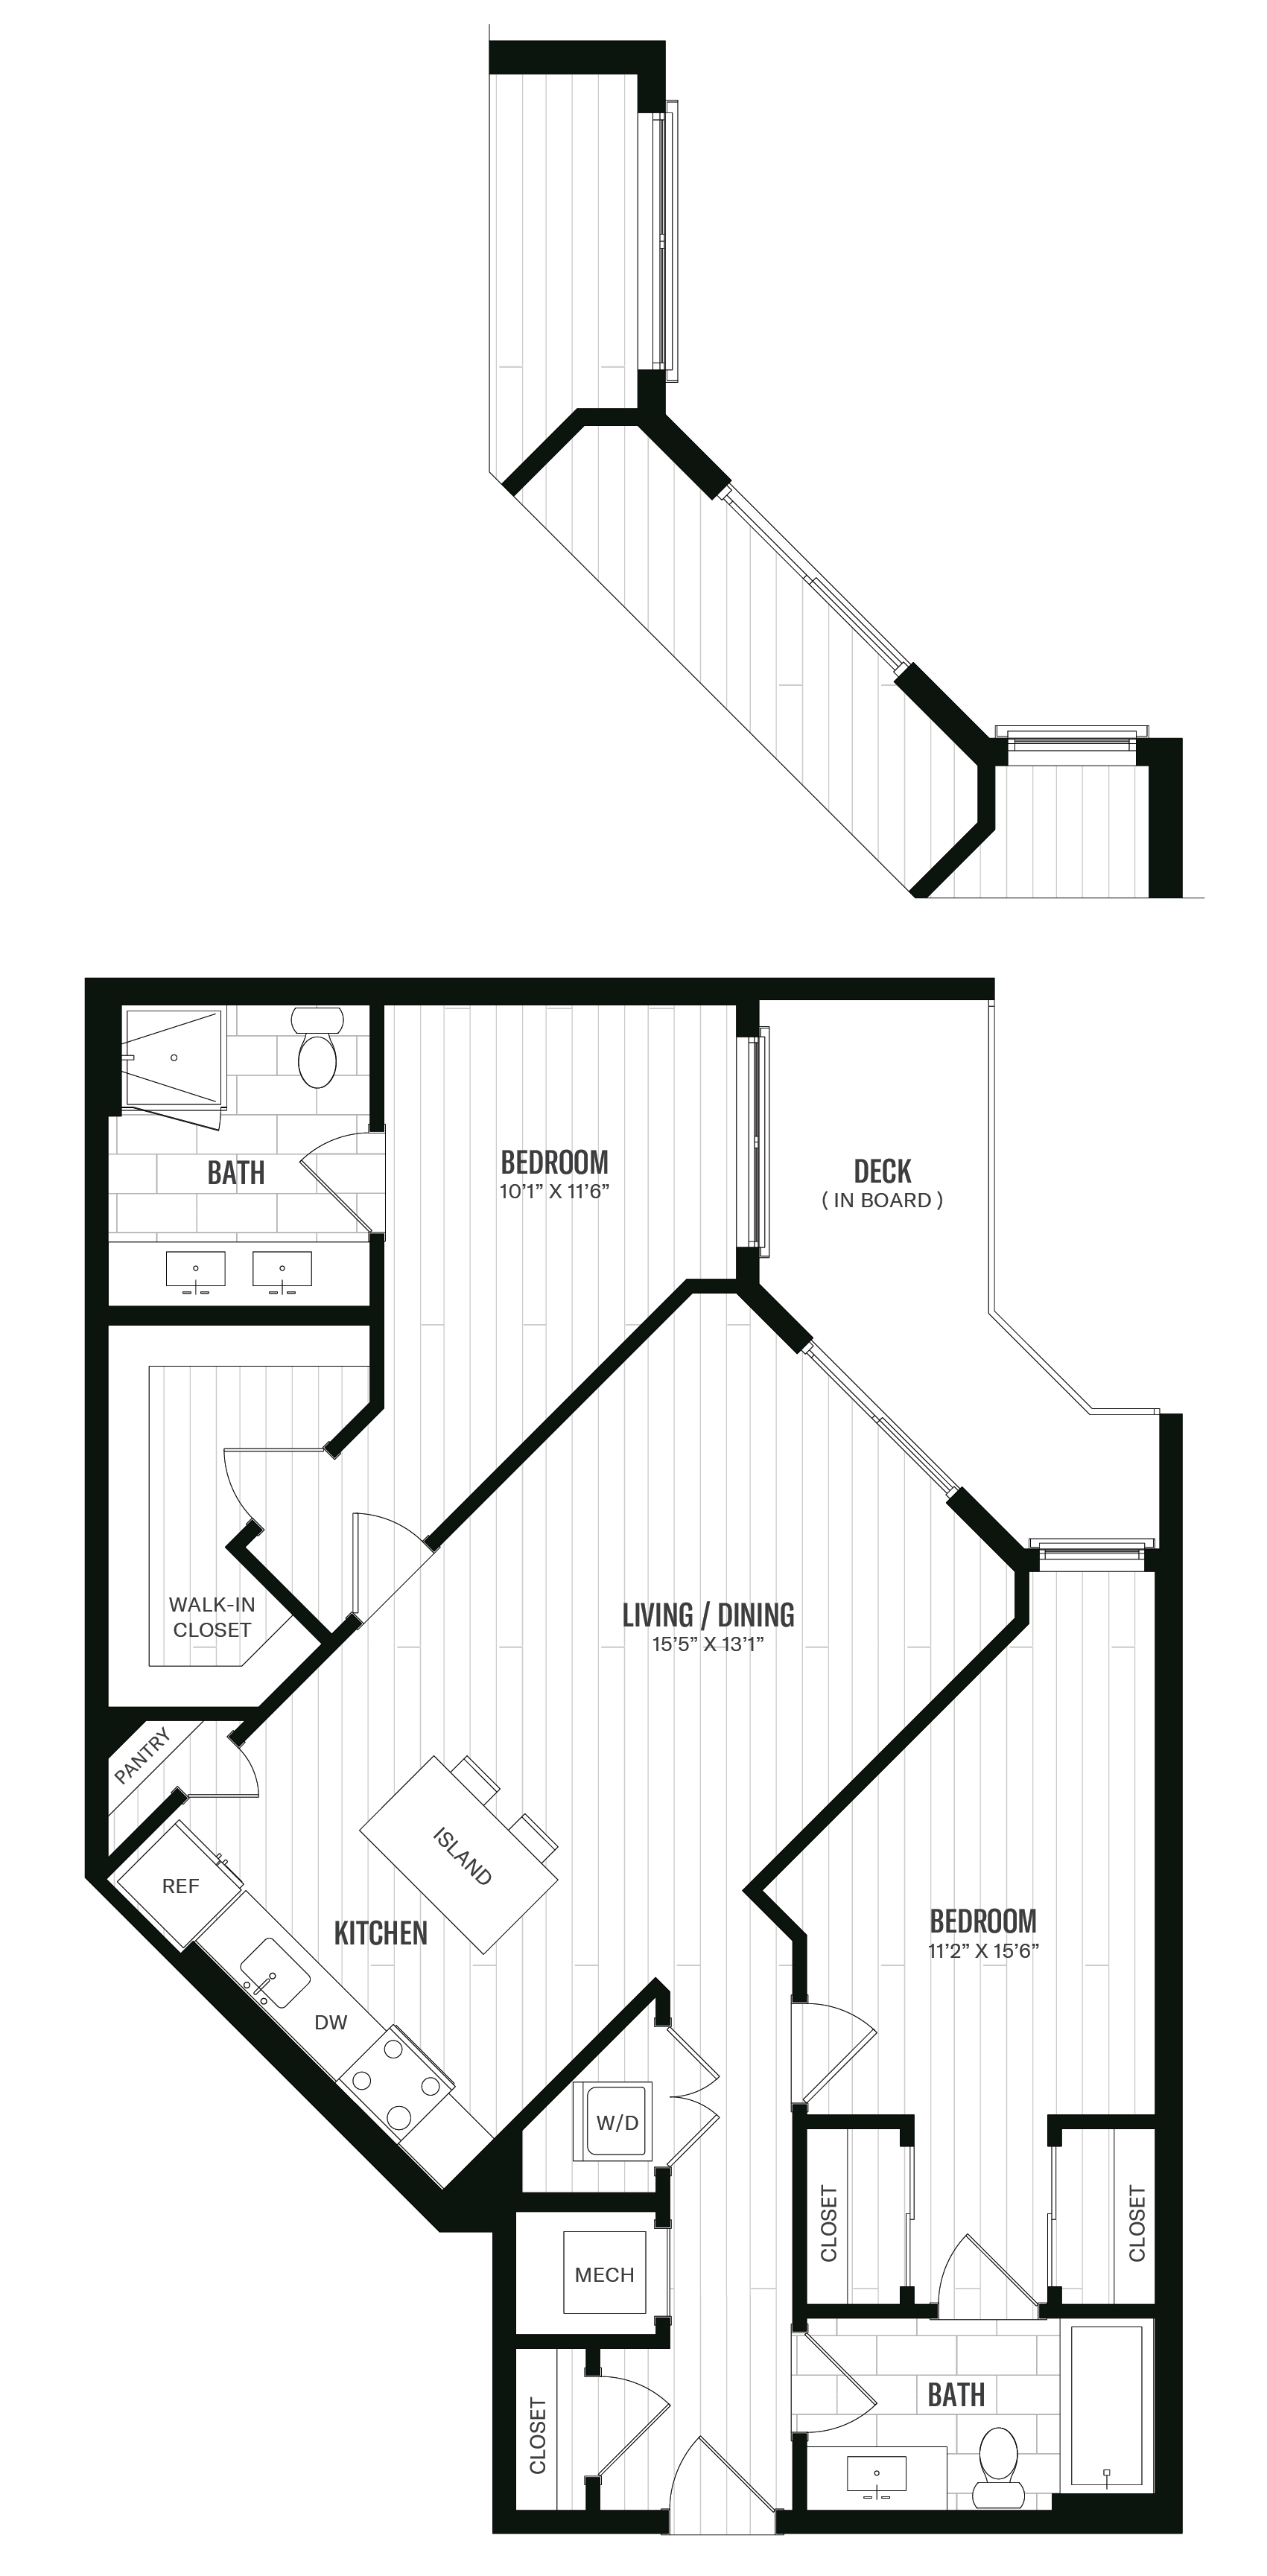 Floorplan image of unit 203